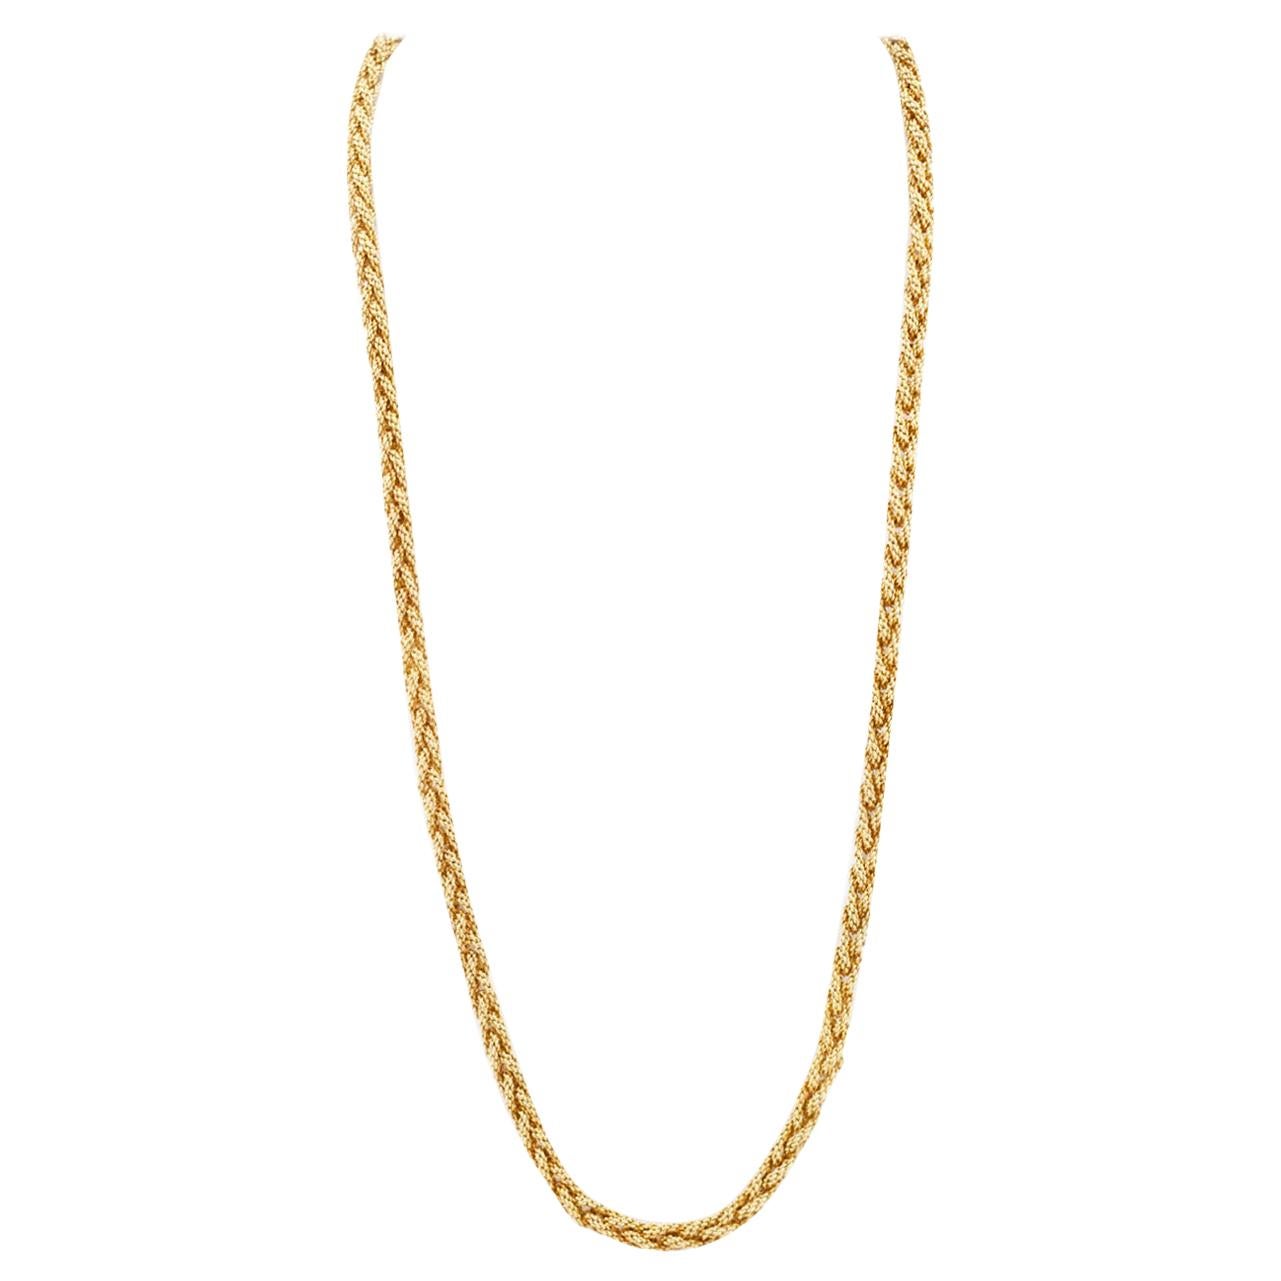 1960s 18 Karat Gold Chain Necklace